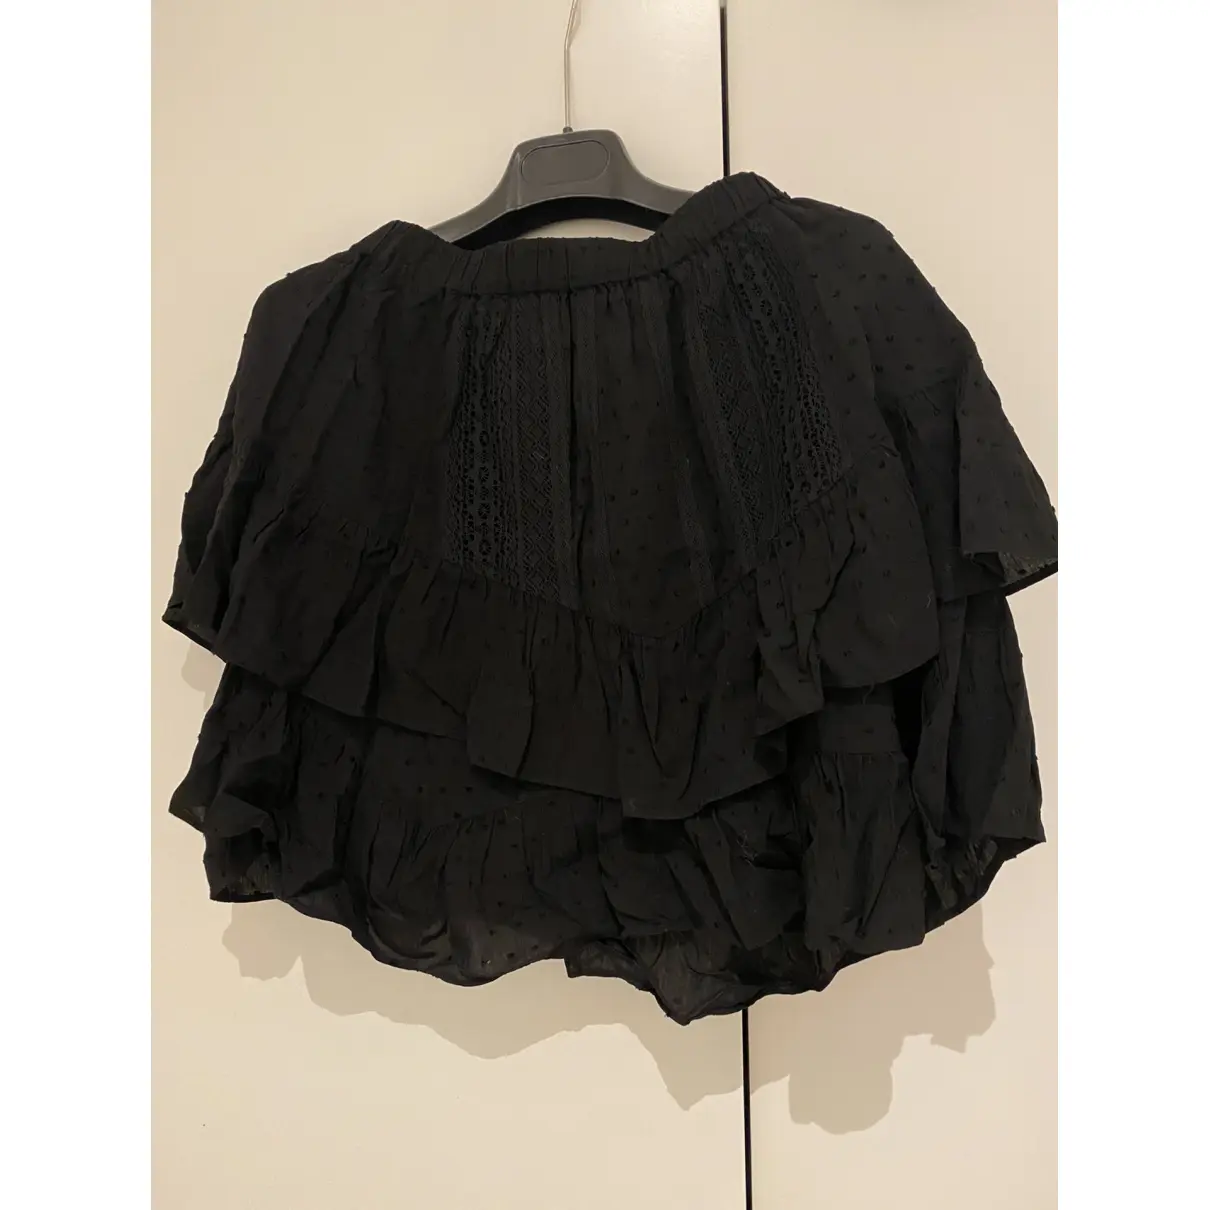 Buy The Kooples Spring Summer 2020 mini skirt online